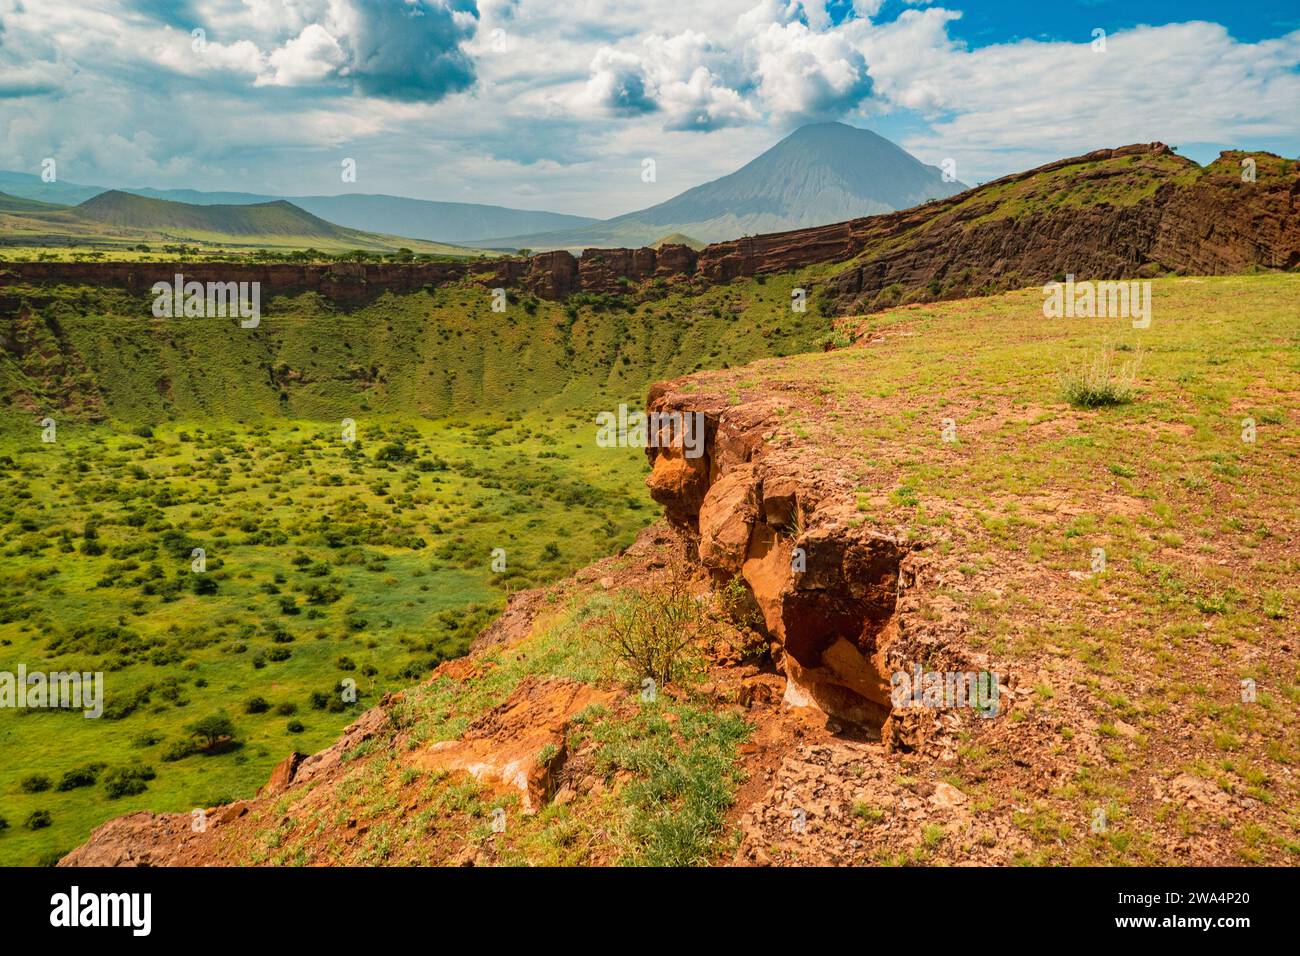 Une vue panoramique de Shimo la Mungu - la fosse de Dieu à la fin du plateau de Makonde avec le mont OL Doinyo Lengai à l'arrière-plan en Tanzanie Banque D'Images